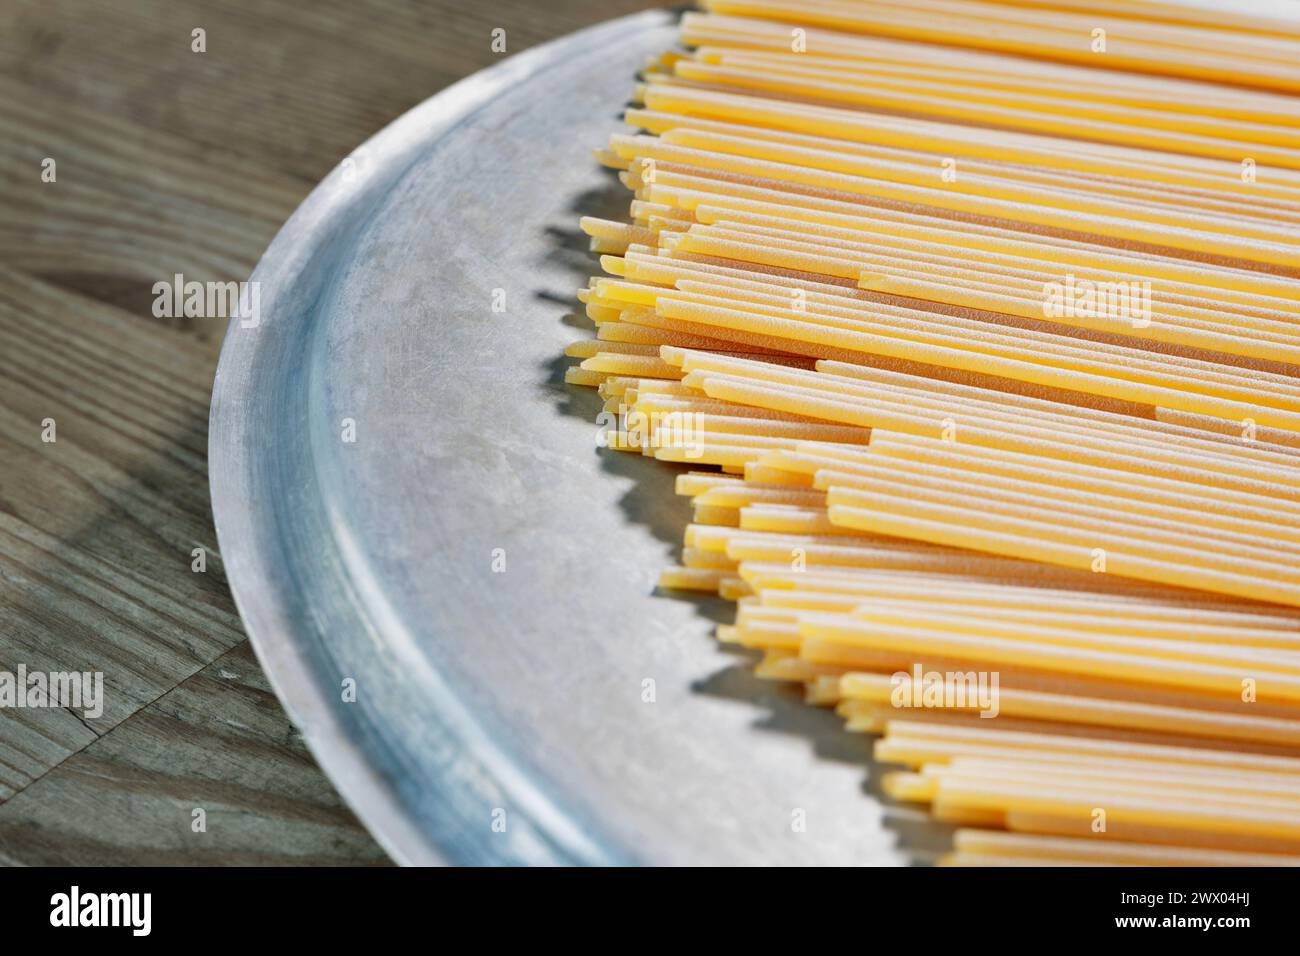 Espagueti de pasta seca sobre la mesa, preparación de alimentos, comida italiana tradicional Foto de stock